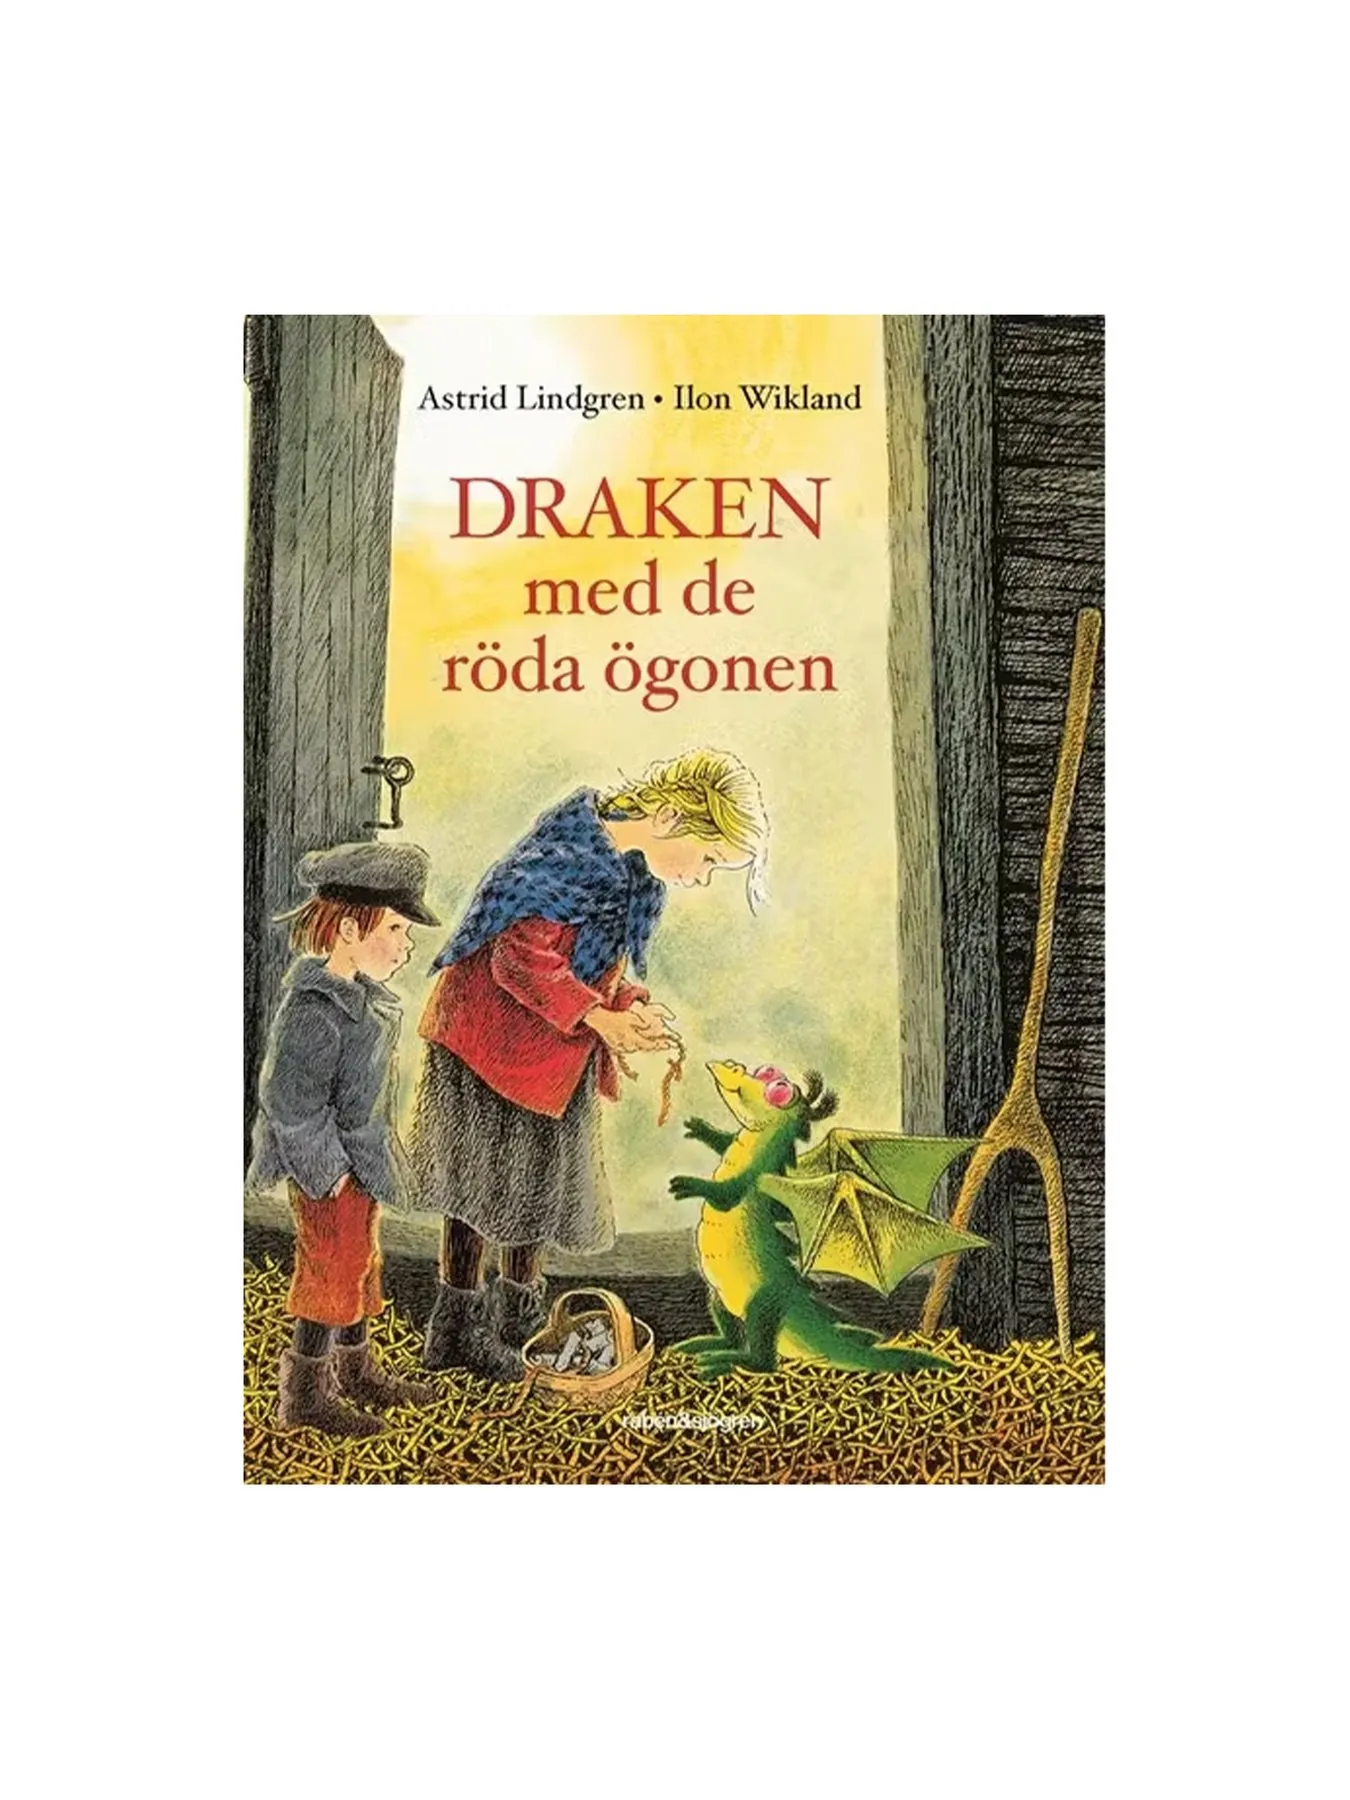 Draken med de röda ögonen (Swedish)